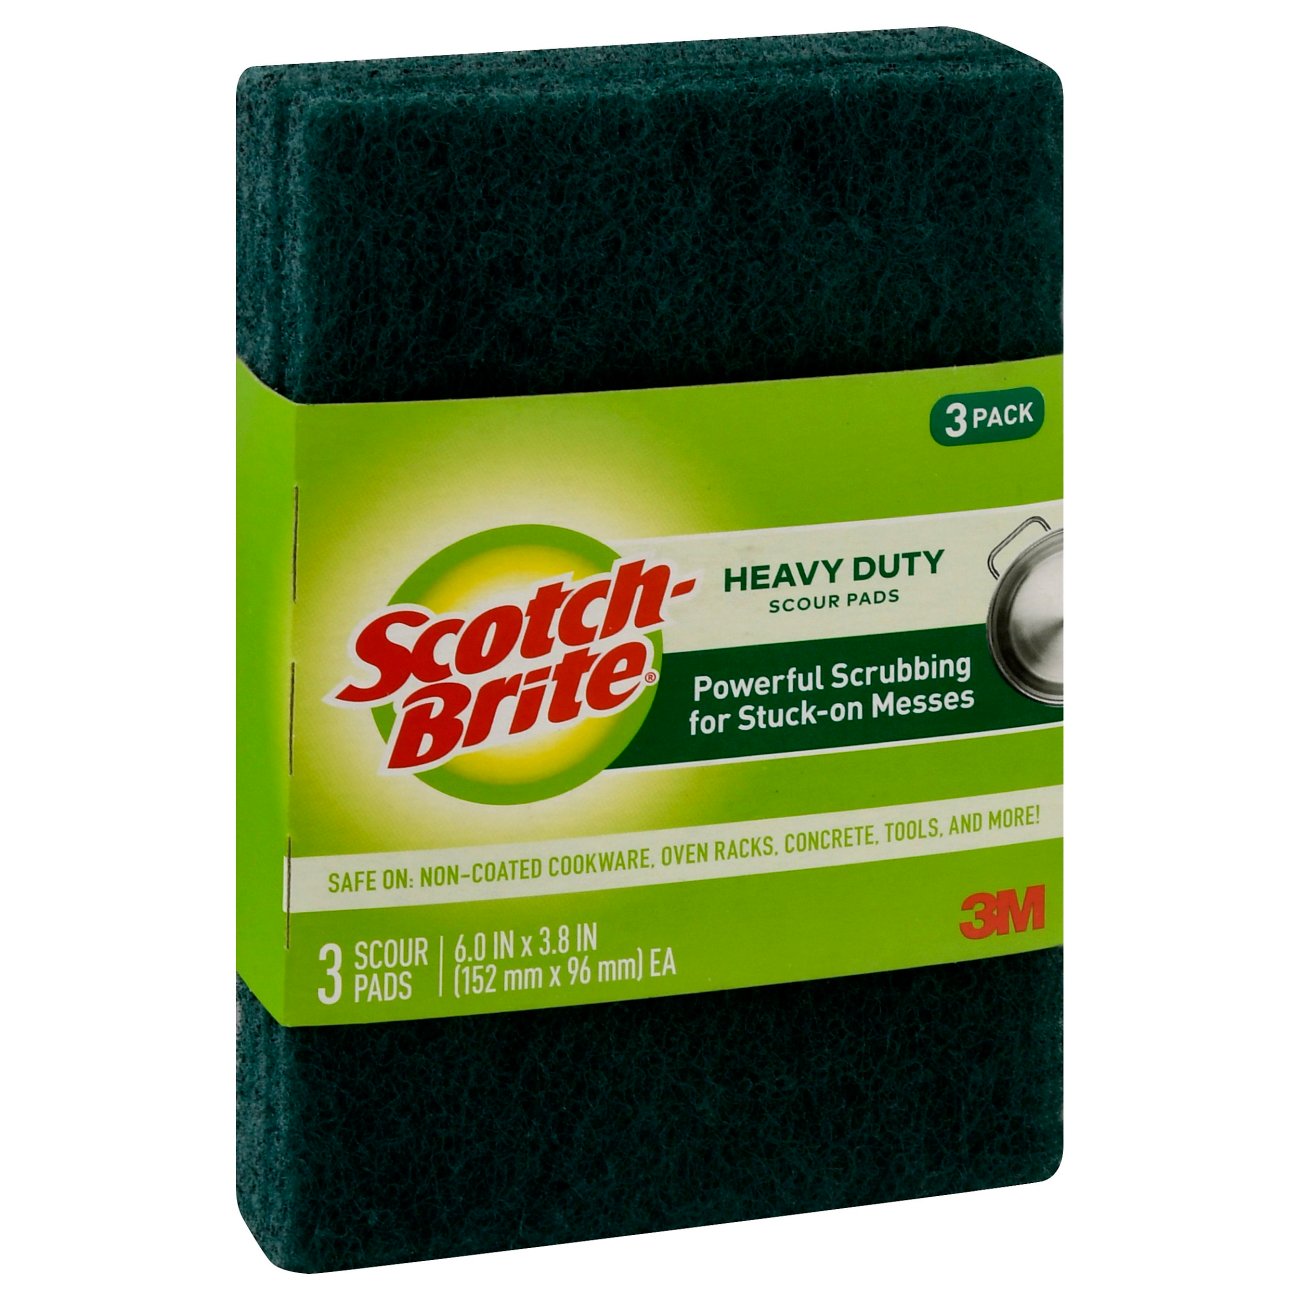 3M Scotch-Brite Heavy Duty Scour Pad 6 pack 4" x 6"  3 pack 12 pack 36 pack